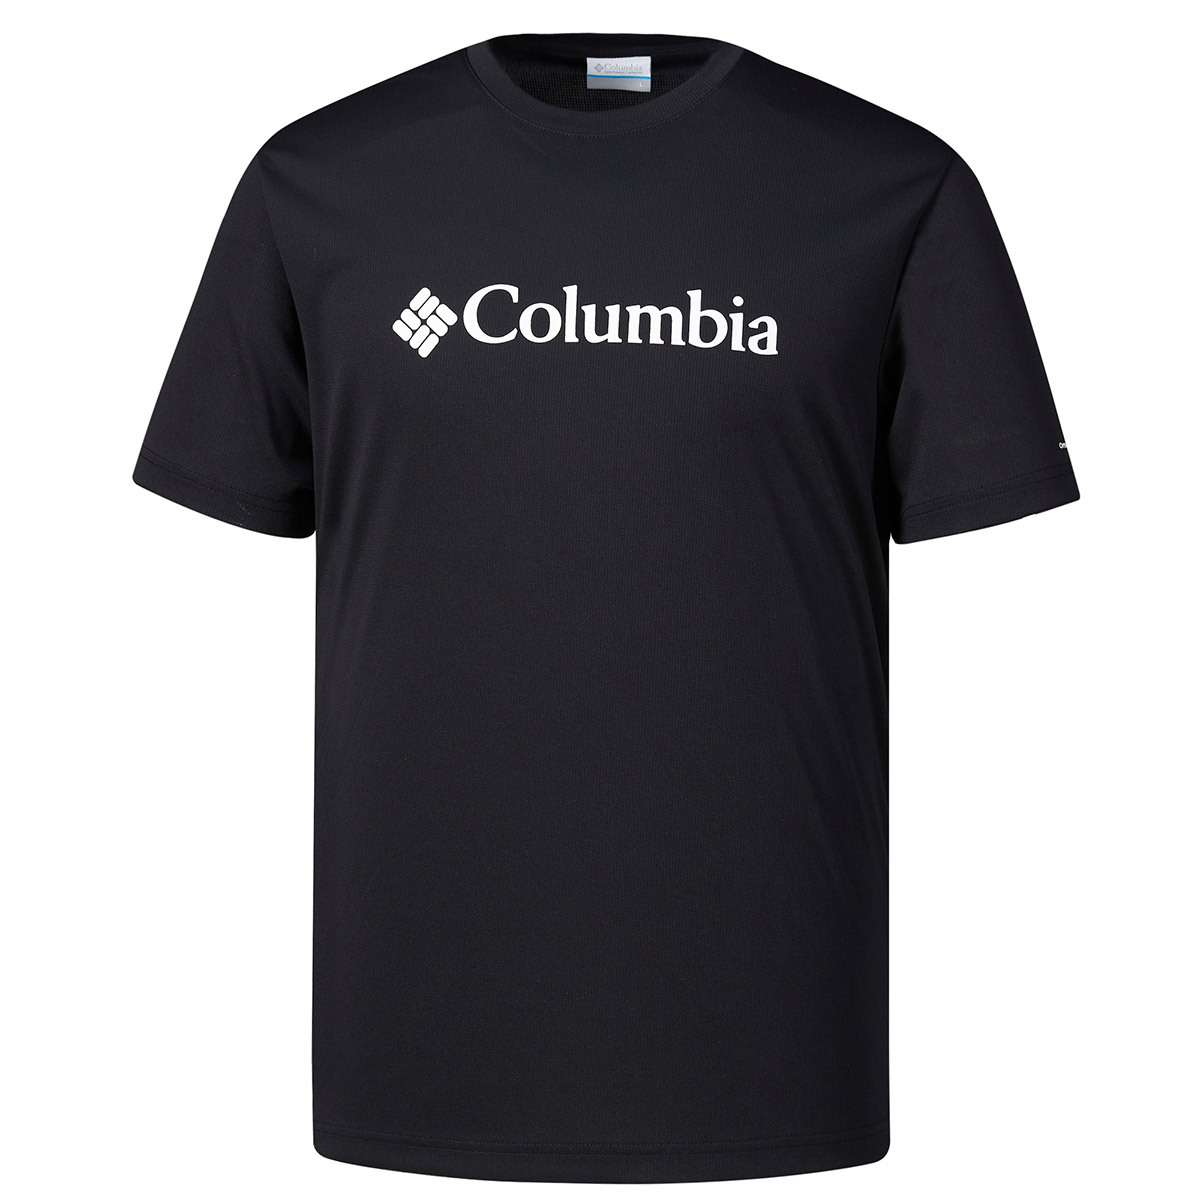 컬럼비아 남성 반소매 티셔츠 - 블랙, XL